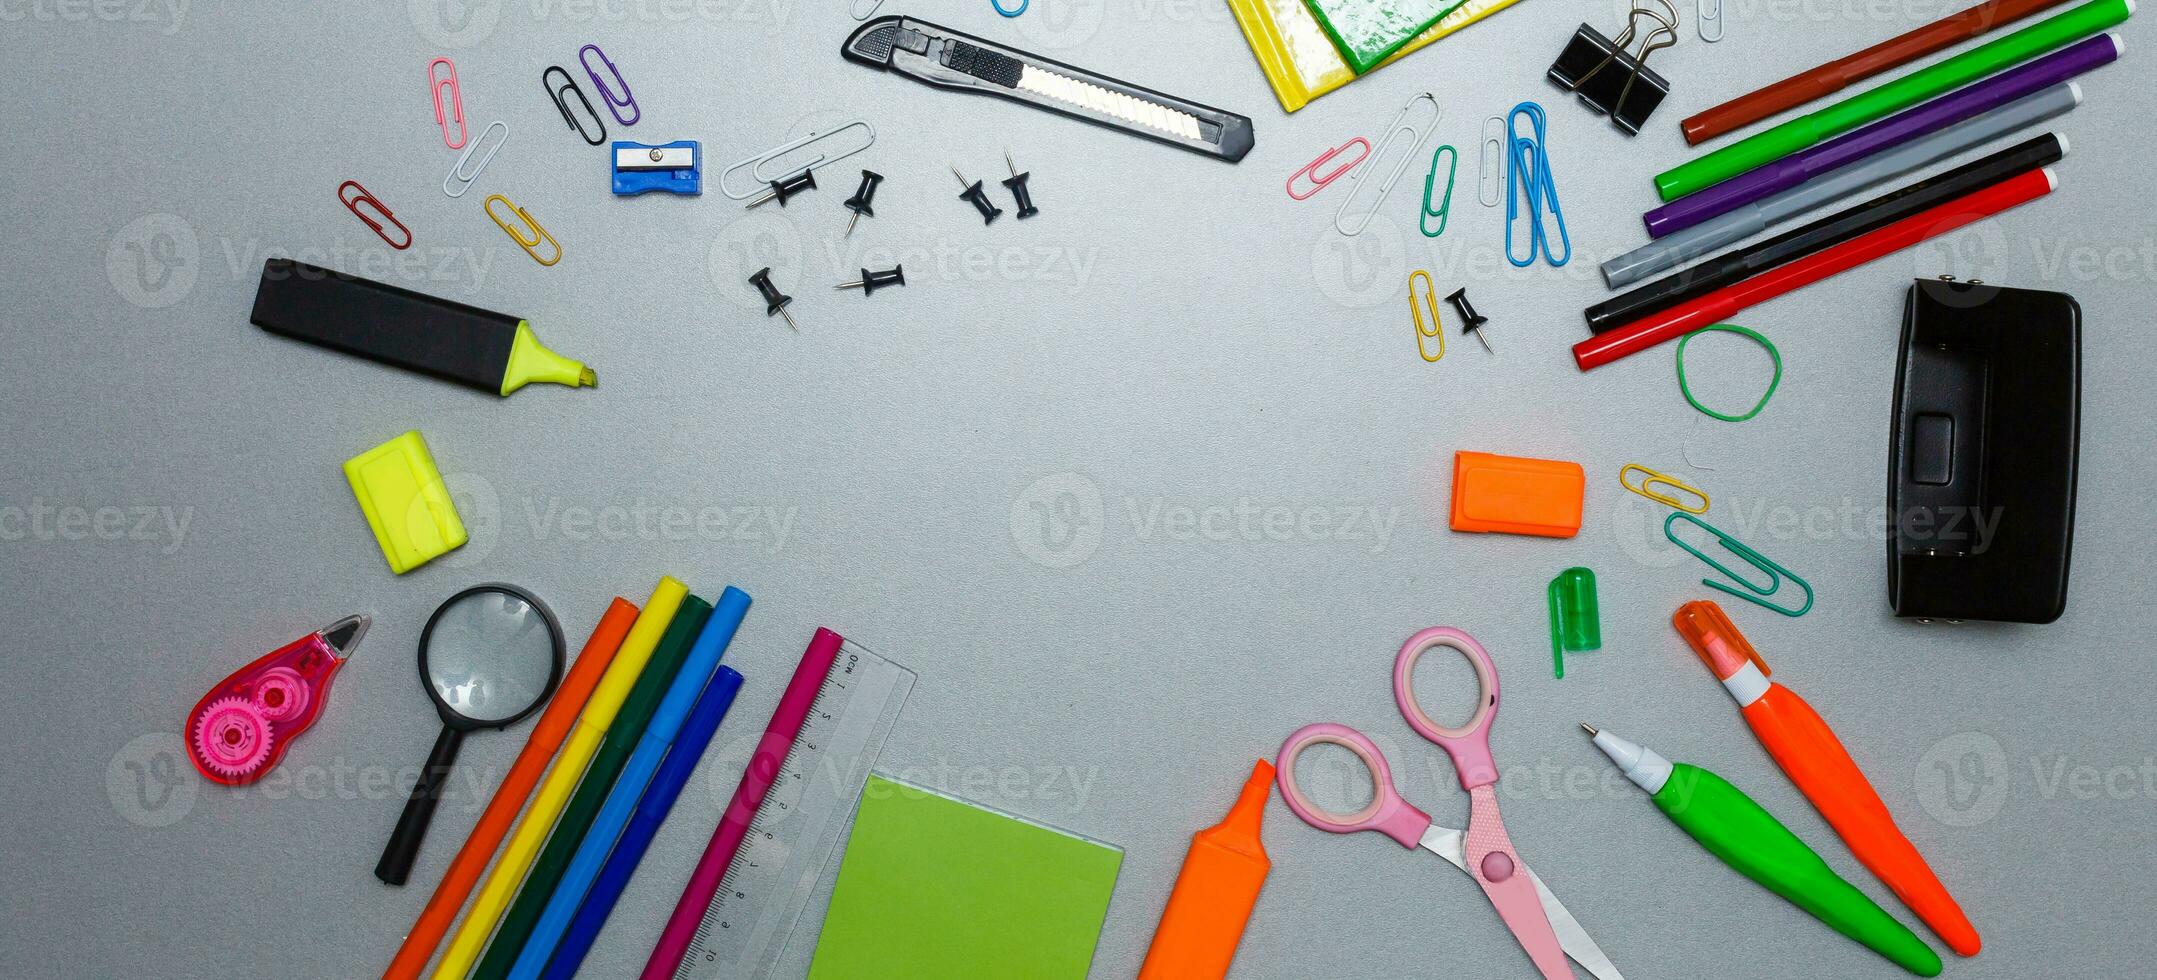 material för skola, papper clips, pennor, färger, sax och anteckningsbok foto